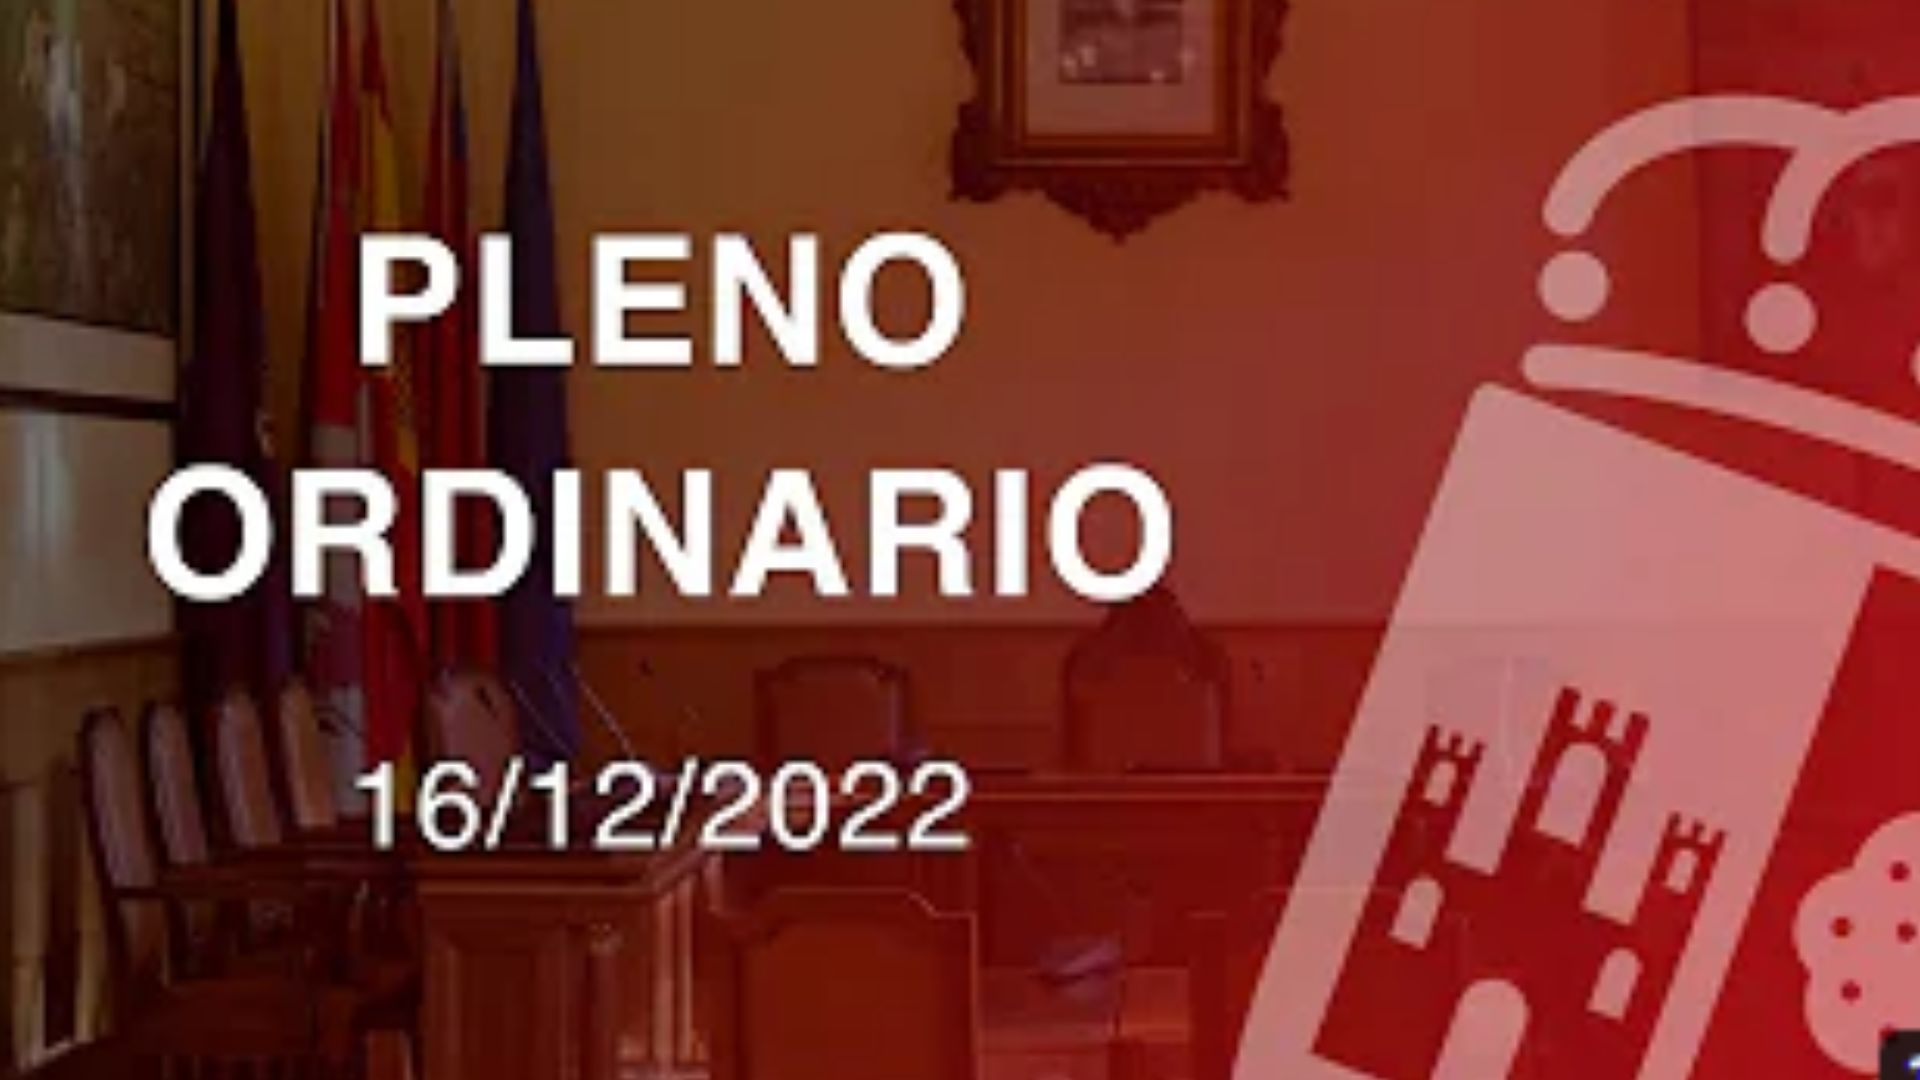 Pleno Ordinario 16/12/2022